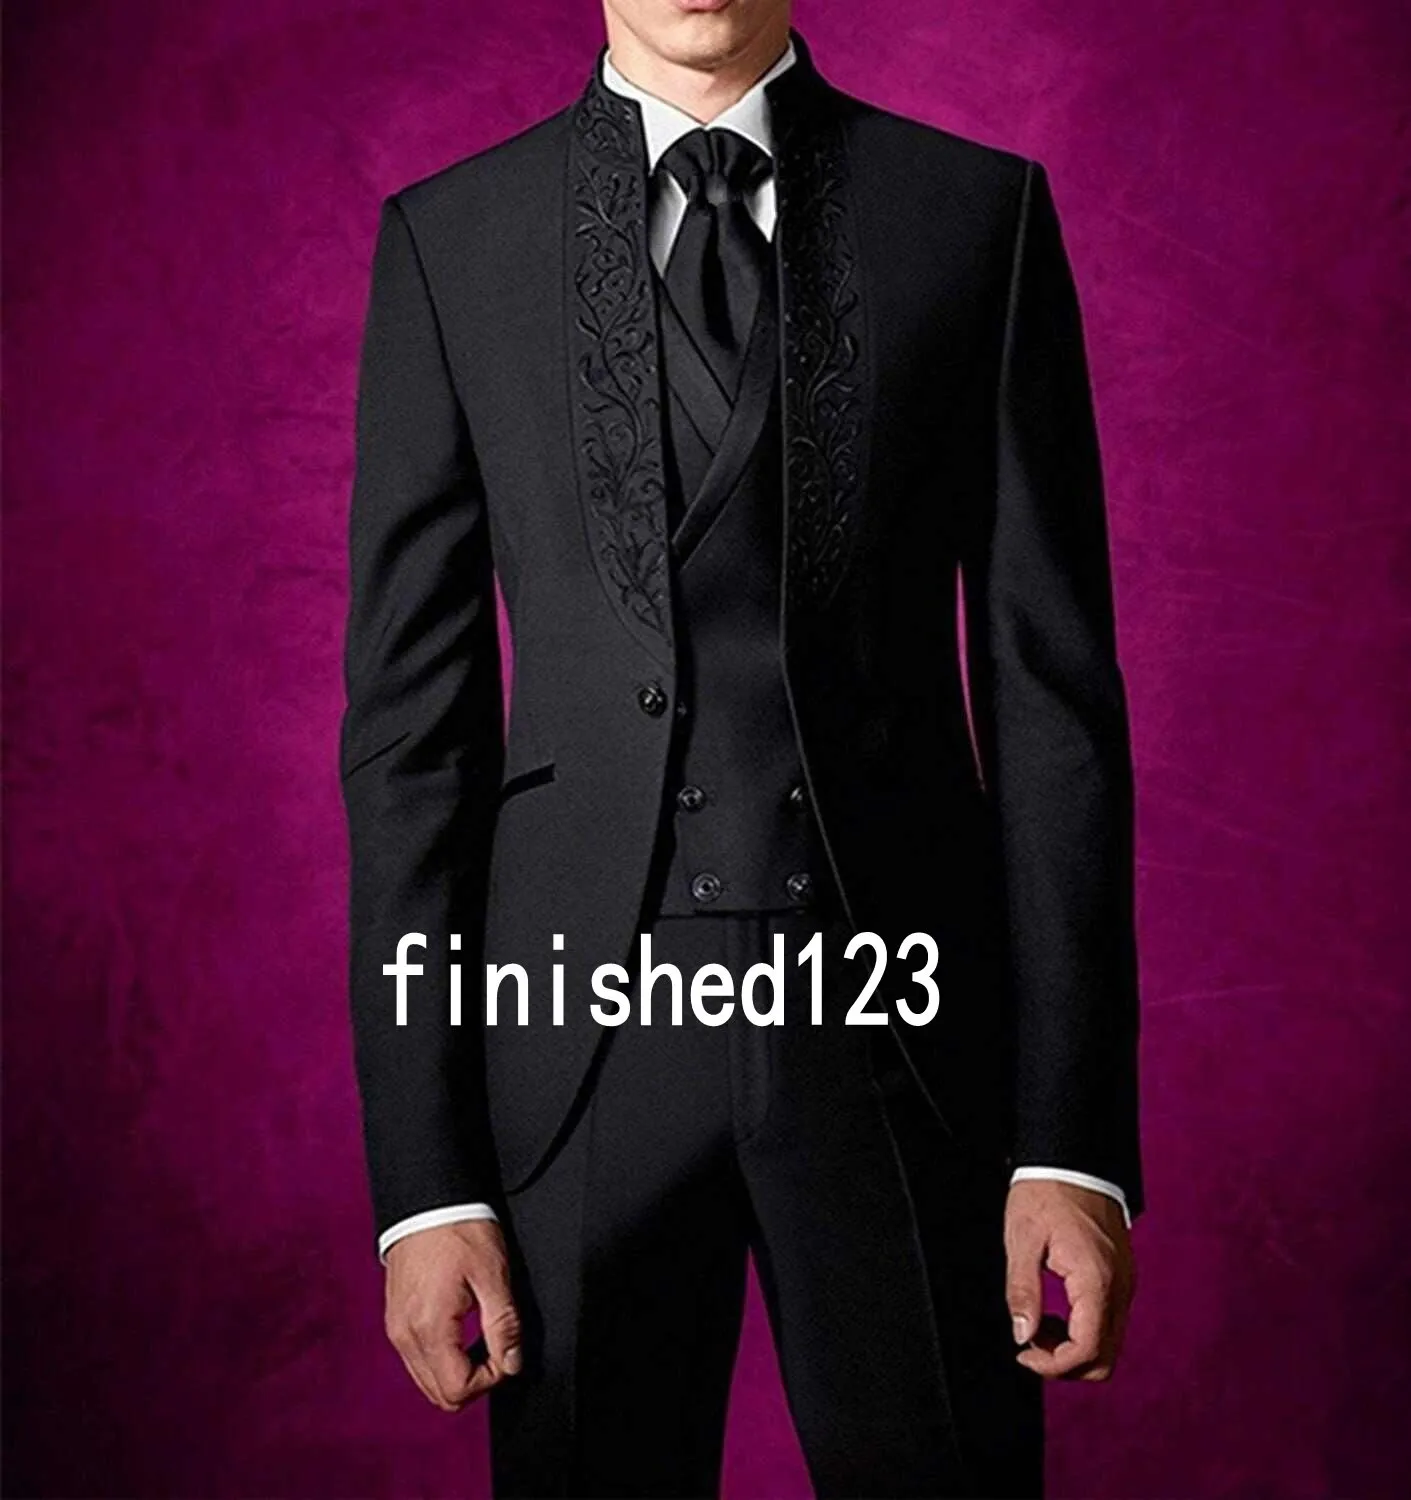 Şık Tasarım Bir Düğme Siyah Damat Smokin Standı Yaka Groomsmen Best Man Suits Mens Düğün Takımları (Ceket + Pantolon + Yelek + Kravat) NO: 907